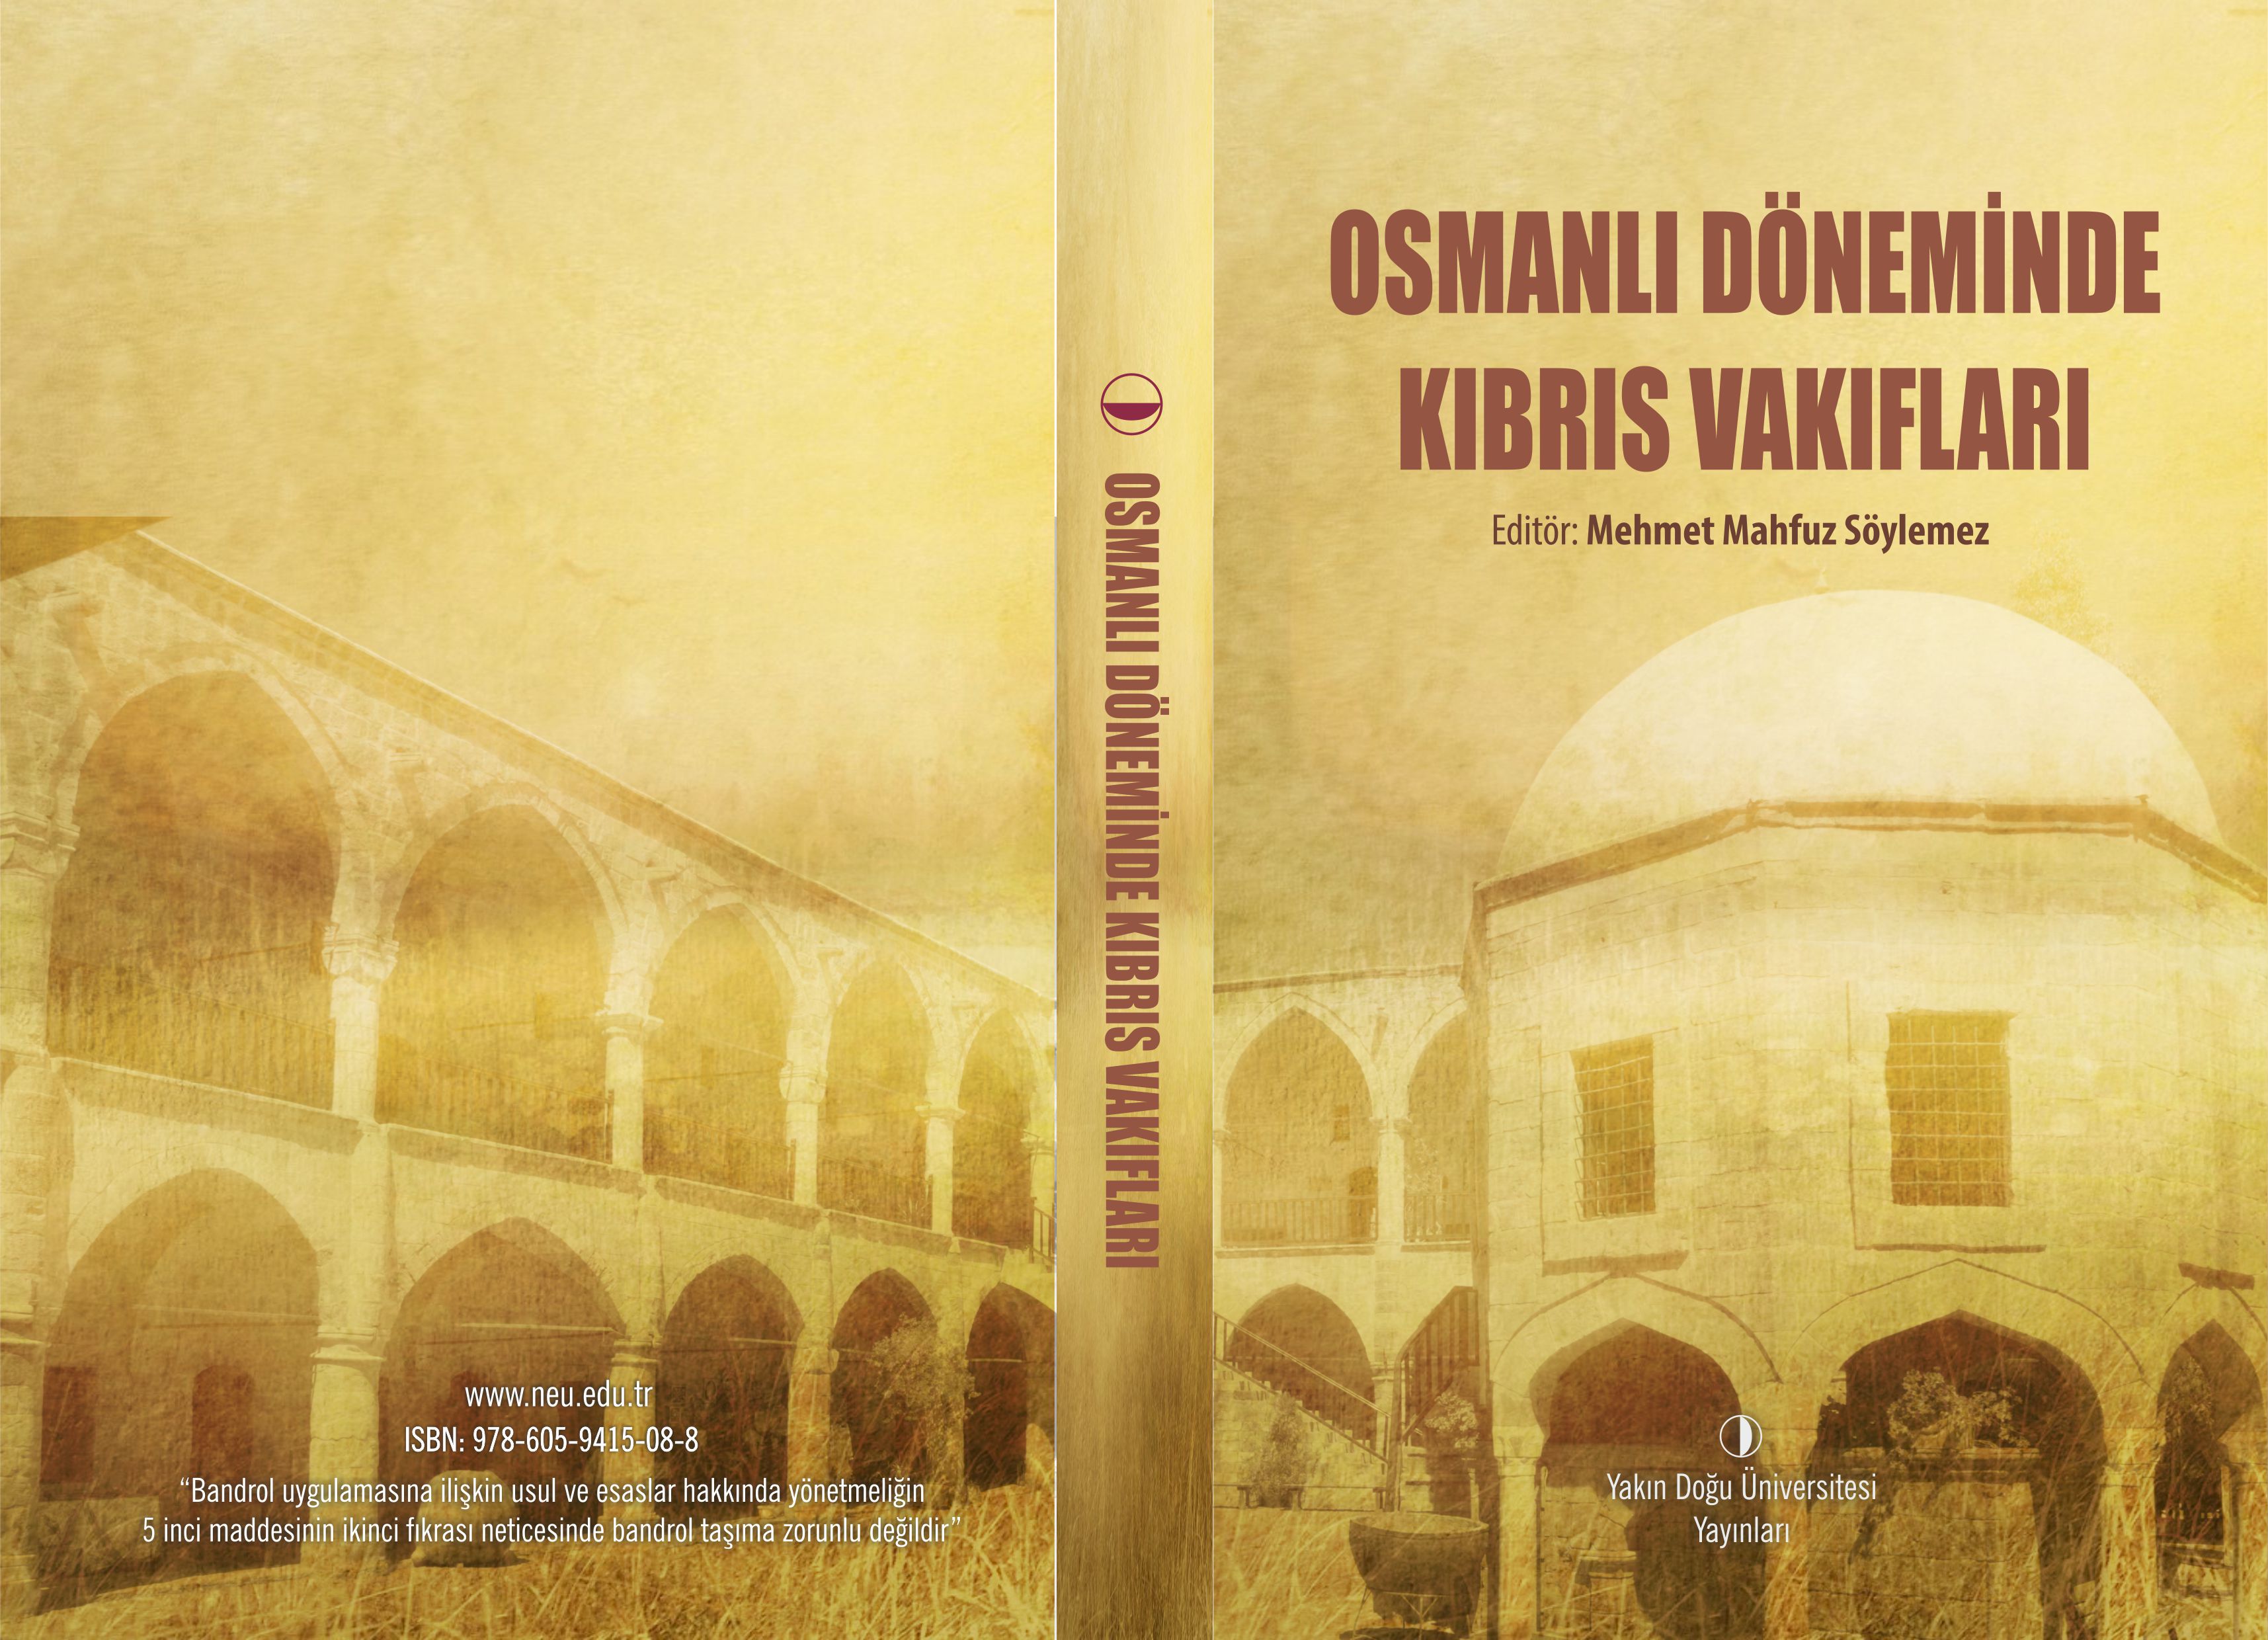 Osmanlı İmparatorluğu Döneminde Kurulan Vakıflar, Yakın Doğu Üniversitesi Yayınlarından Çıkan Kitapta Toplandı